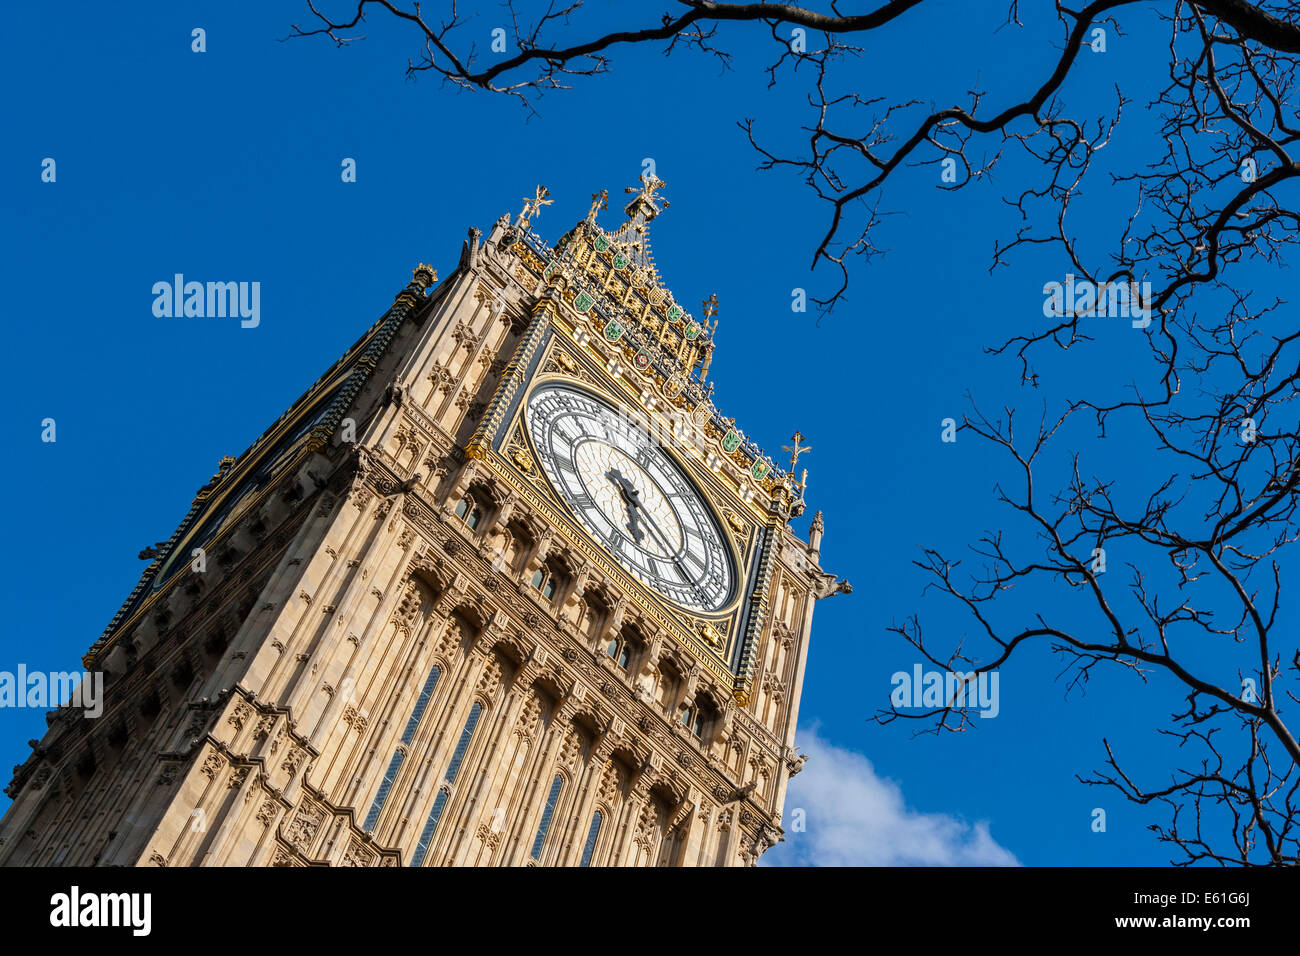 Elizabeth Carter torre orologio comunemente noto come Big Ben presso le Case del Parlamento Londra England Regno Unito. JMH6358 Foto Stock